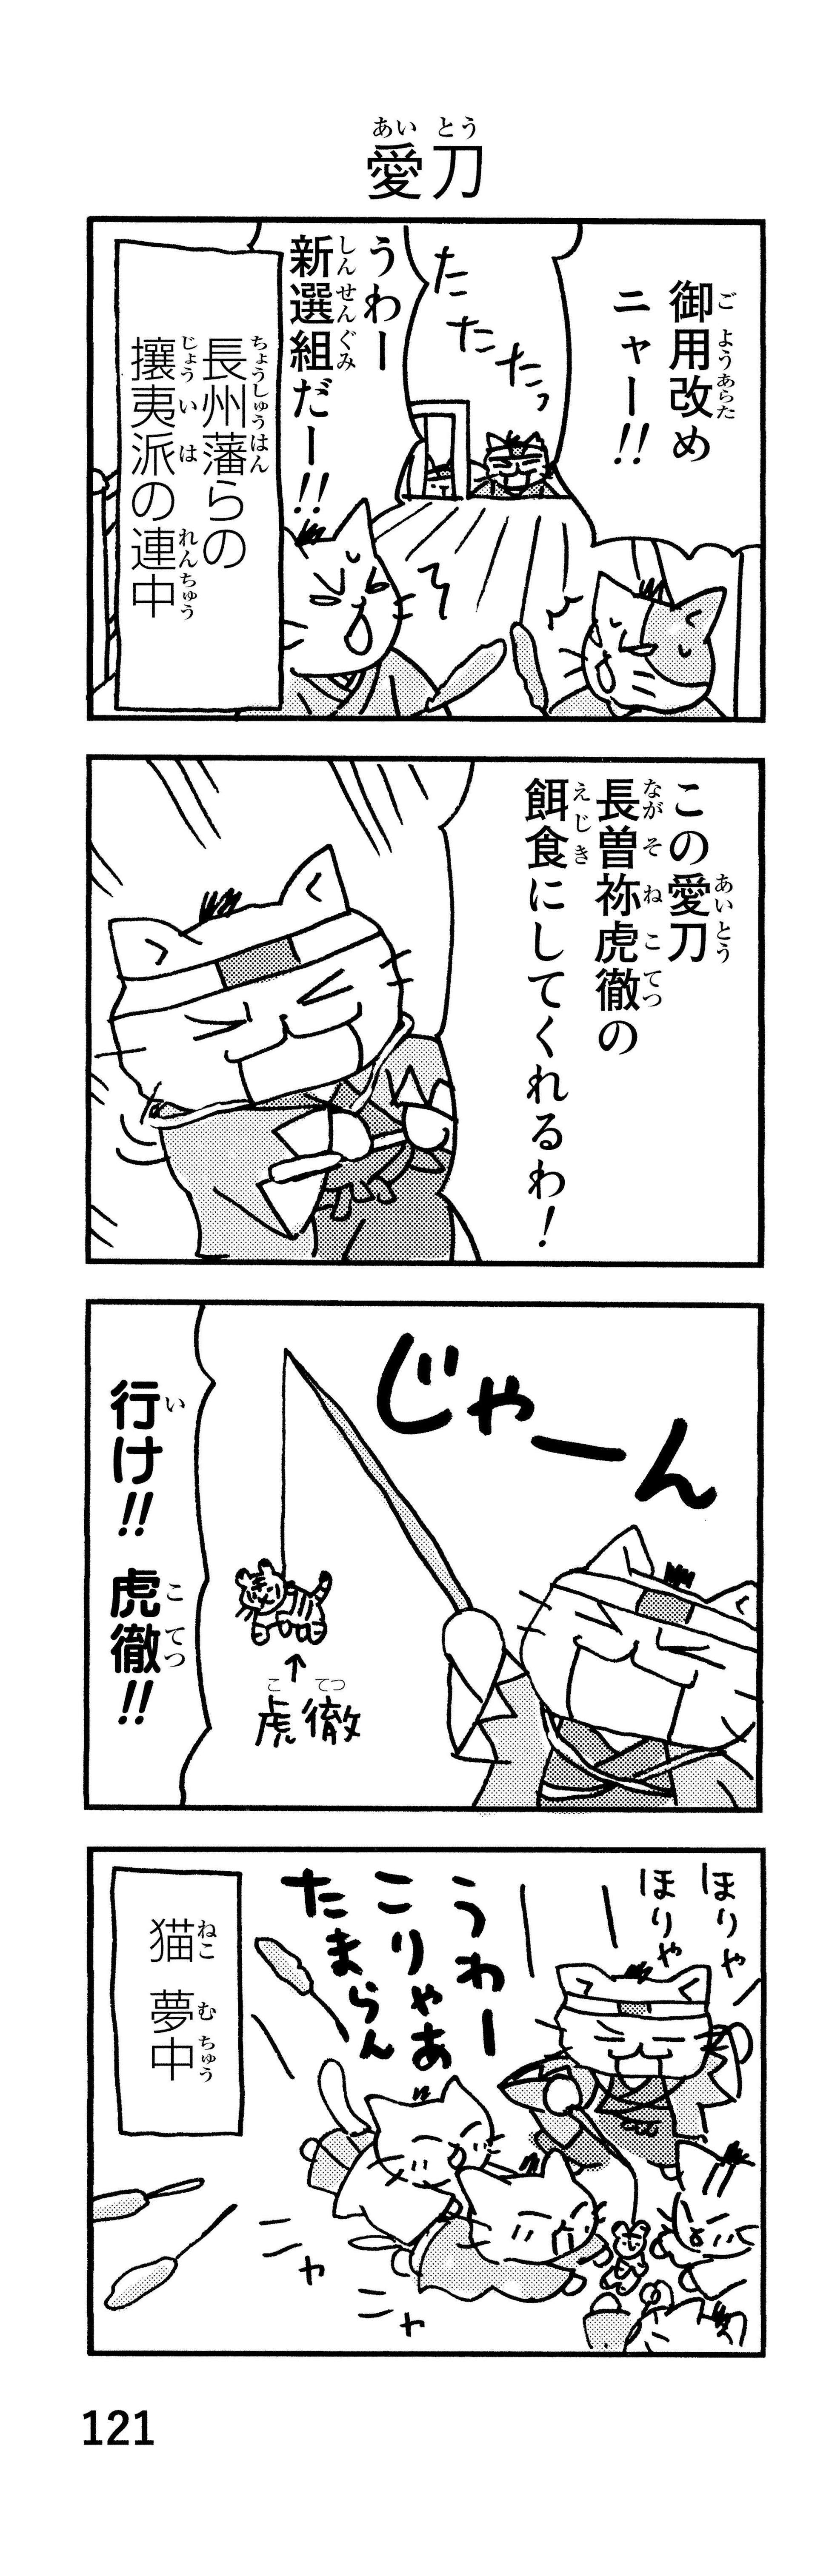 「御用改めニャー！」かわいい猫で描かれる新選組。近藤、土方、沖田が猫になると／ねこねこ日本史